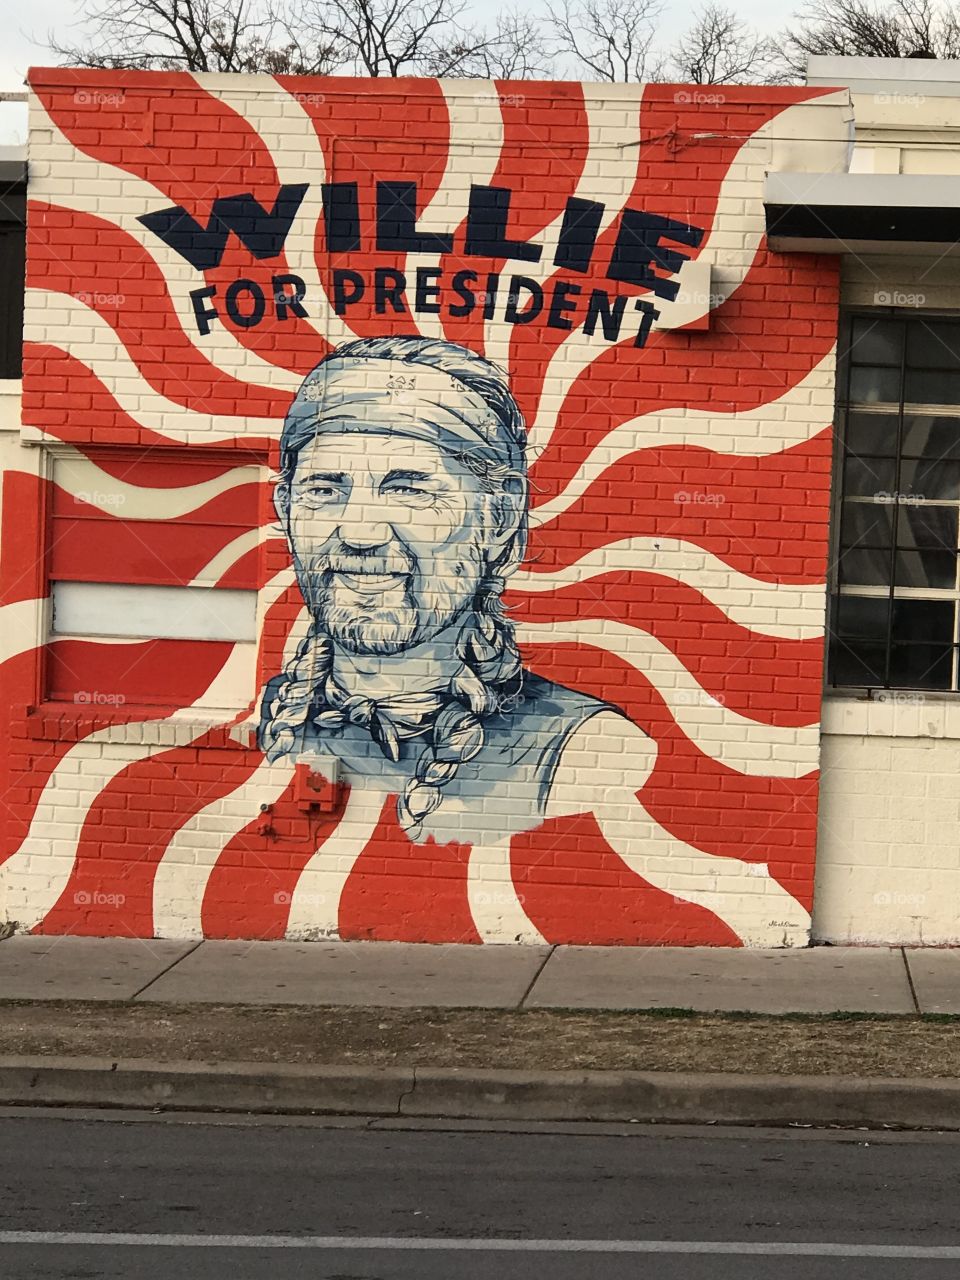 Willie for president 